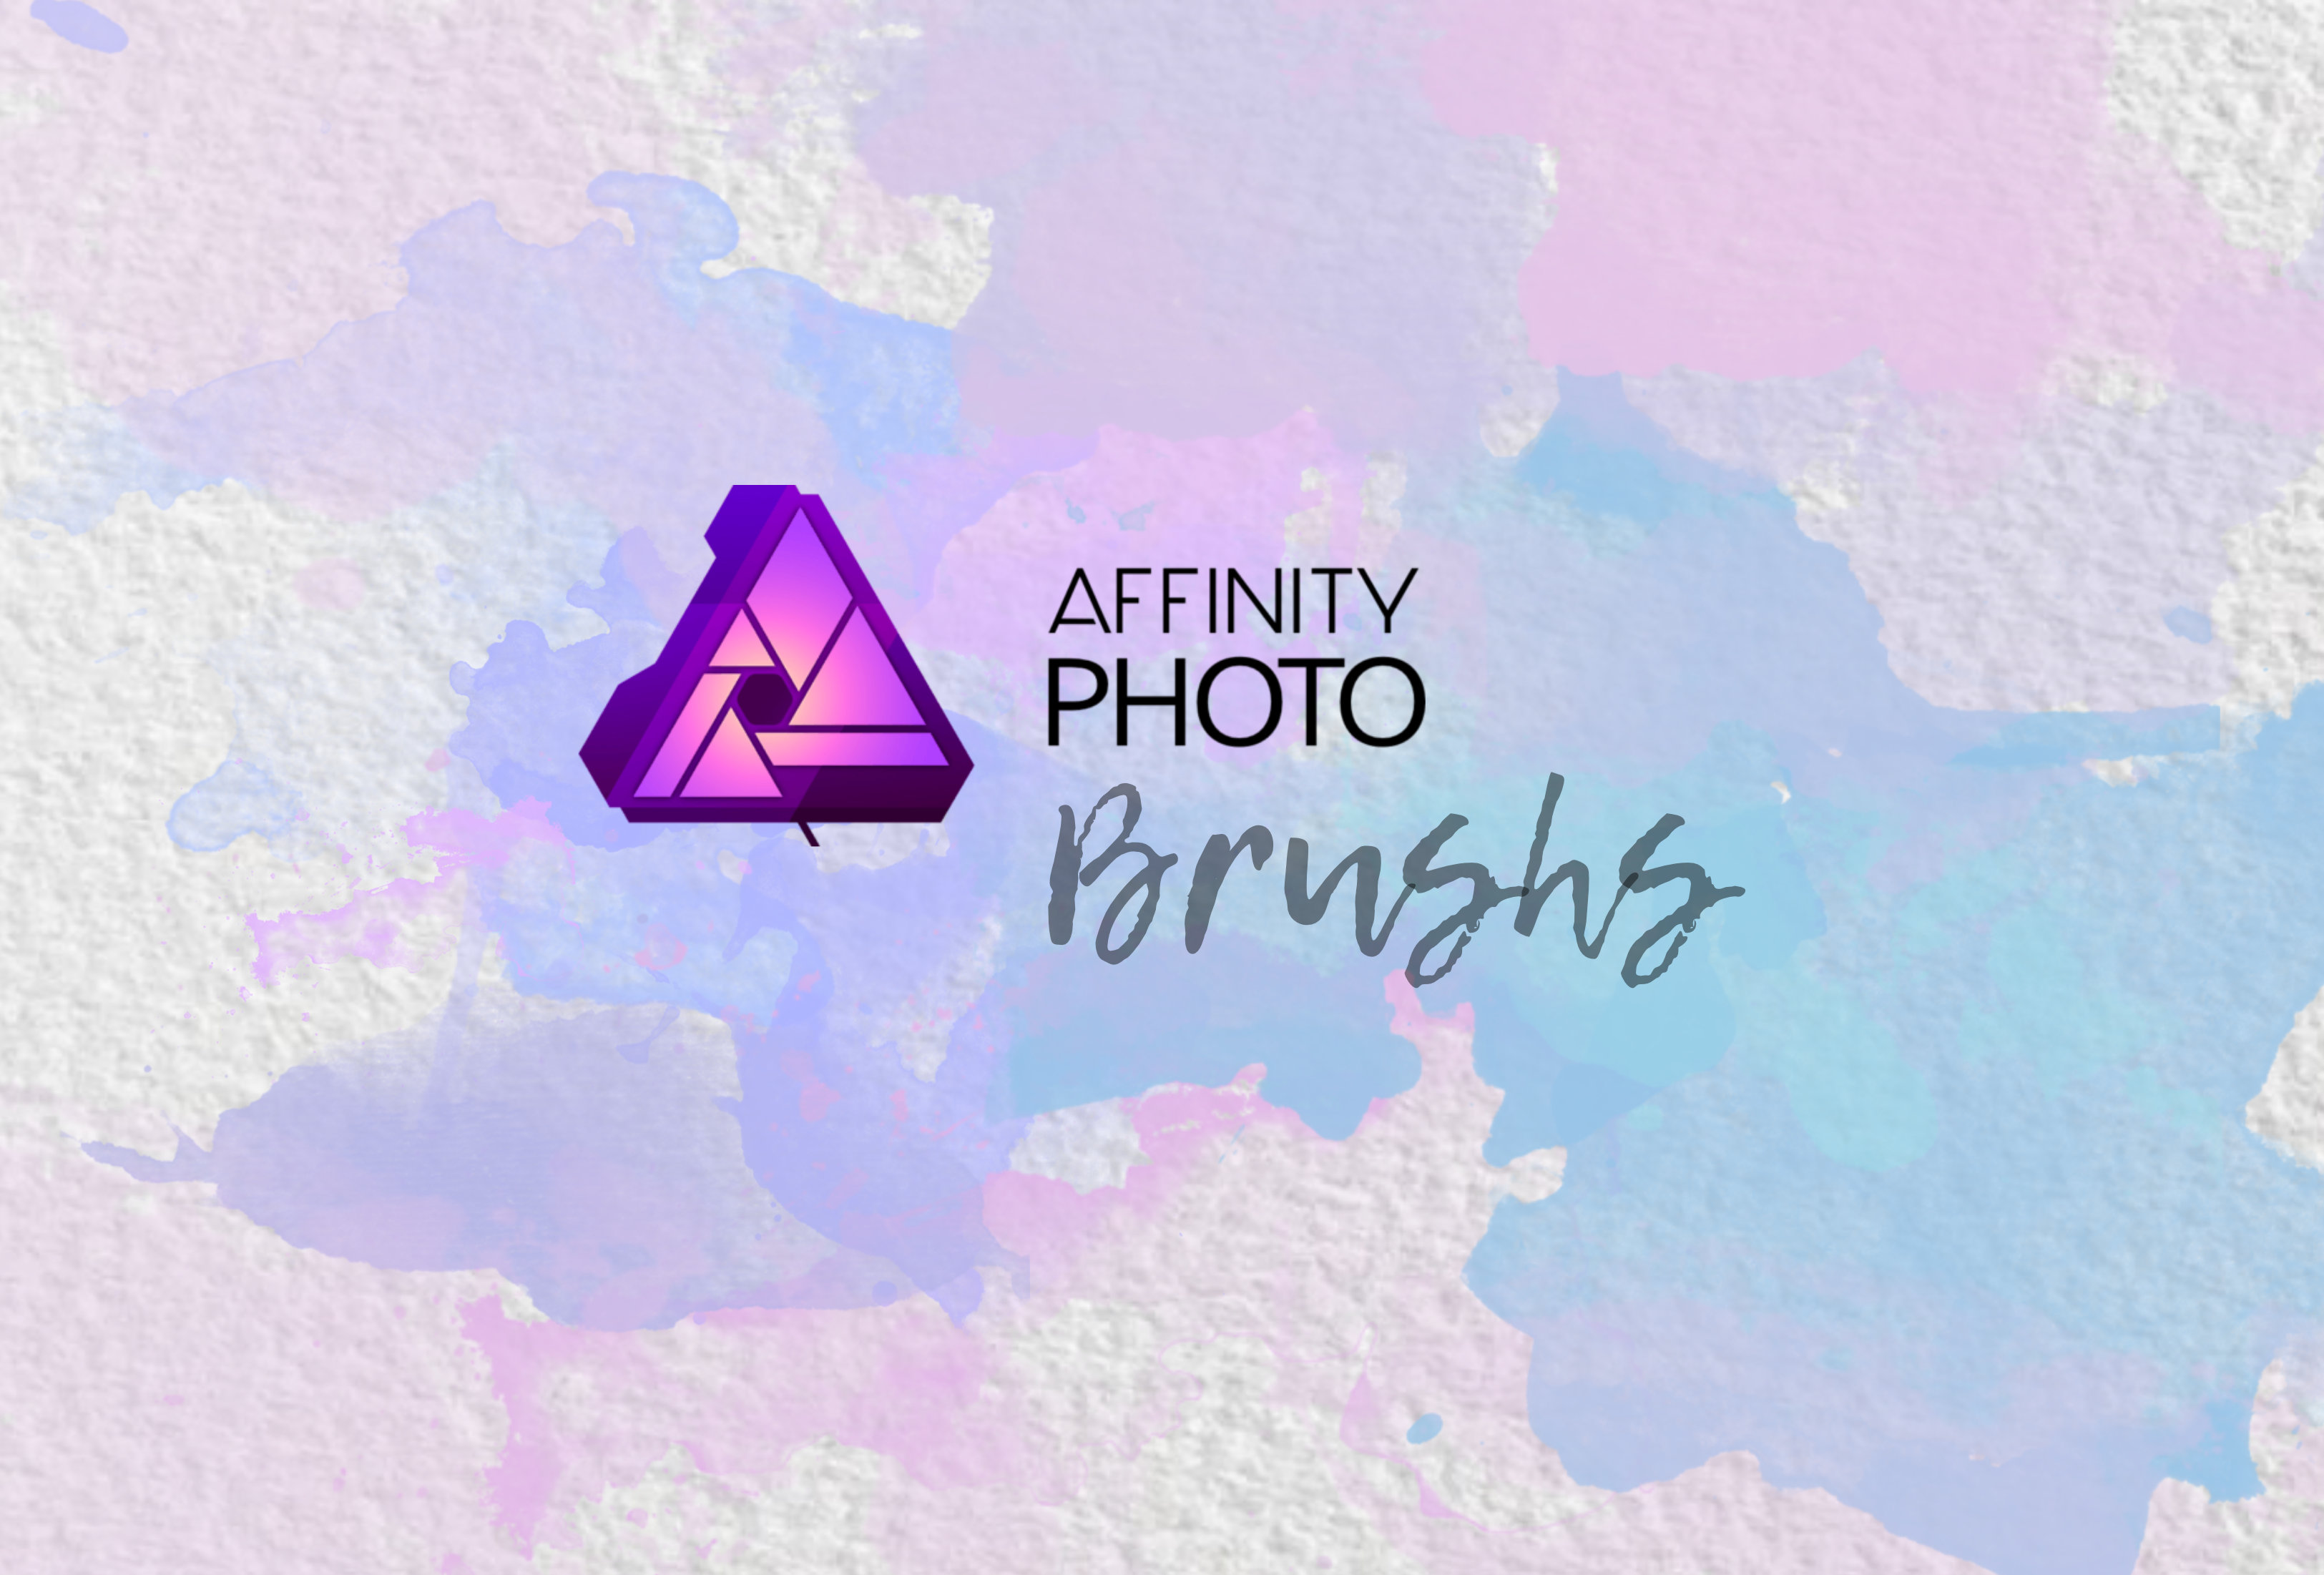 วิธีการเพิ่ม Brush จาก Photoshop มาใช้ใน Affinity Photos